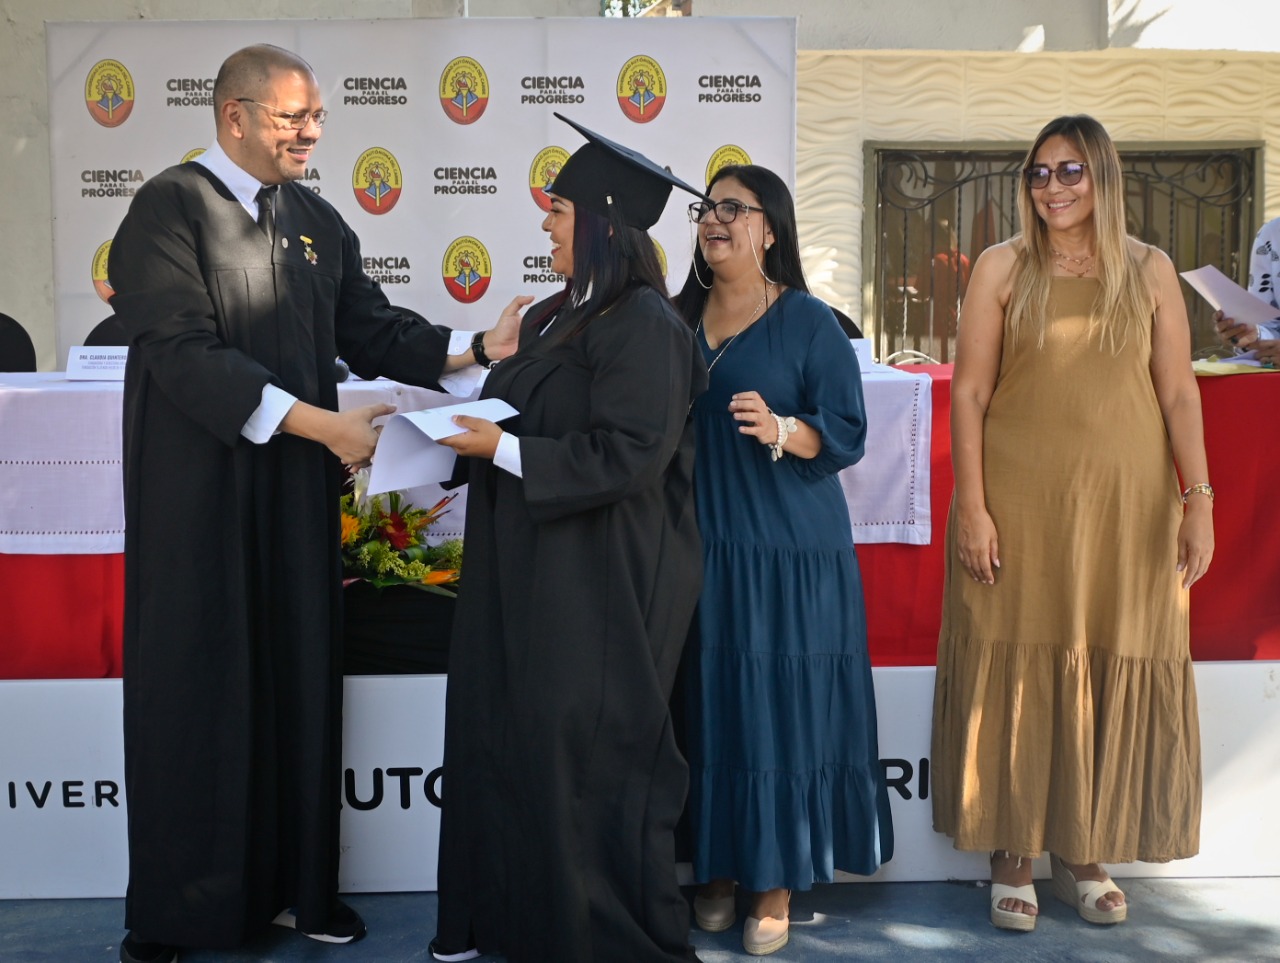 El rector Mauricio Molinares entrega el diploma a una de las graduandas.